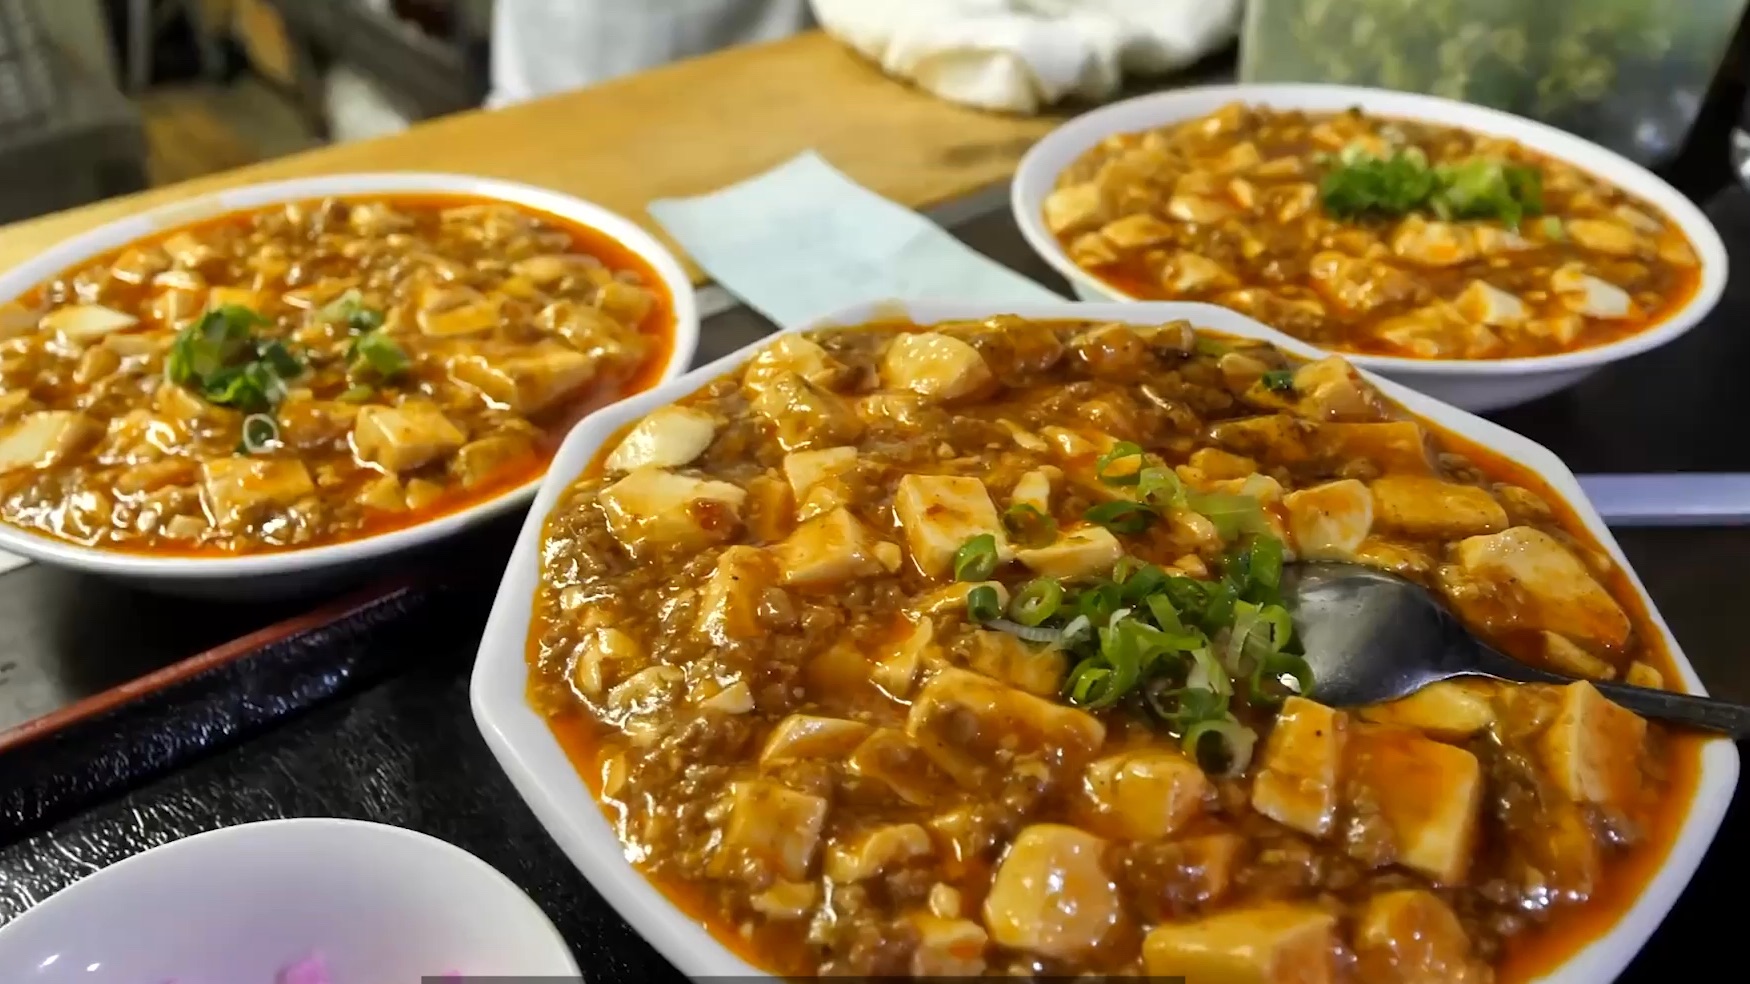 【日本的中华料理】中国厨师经营的饭店，午餐期间常客蜂拥而至的夫妻二人的中华料理店，吃香的麻婆豆腐，